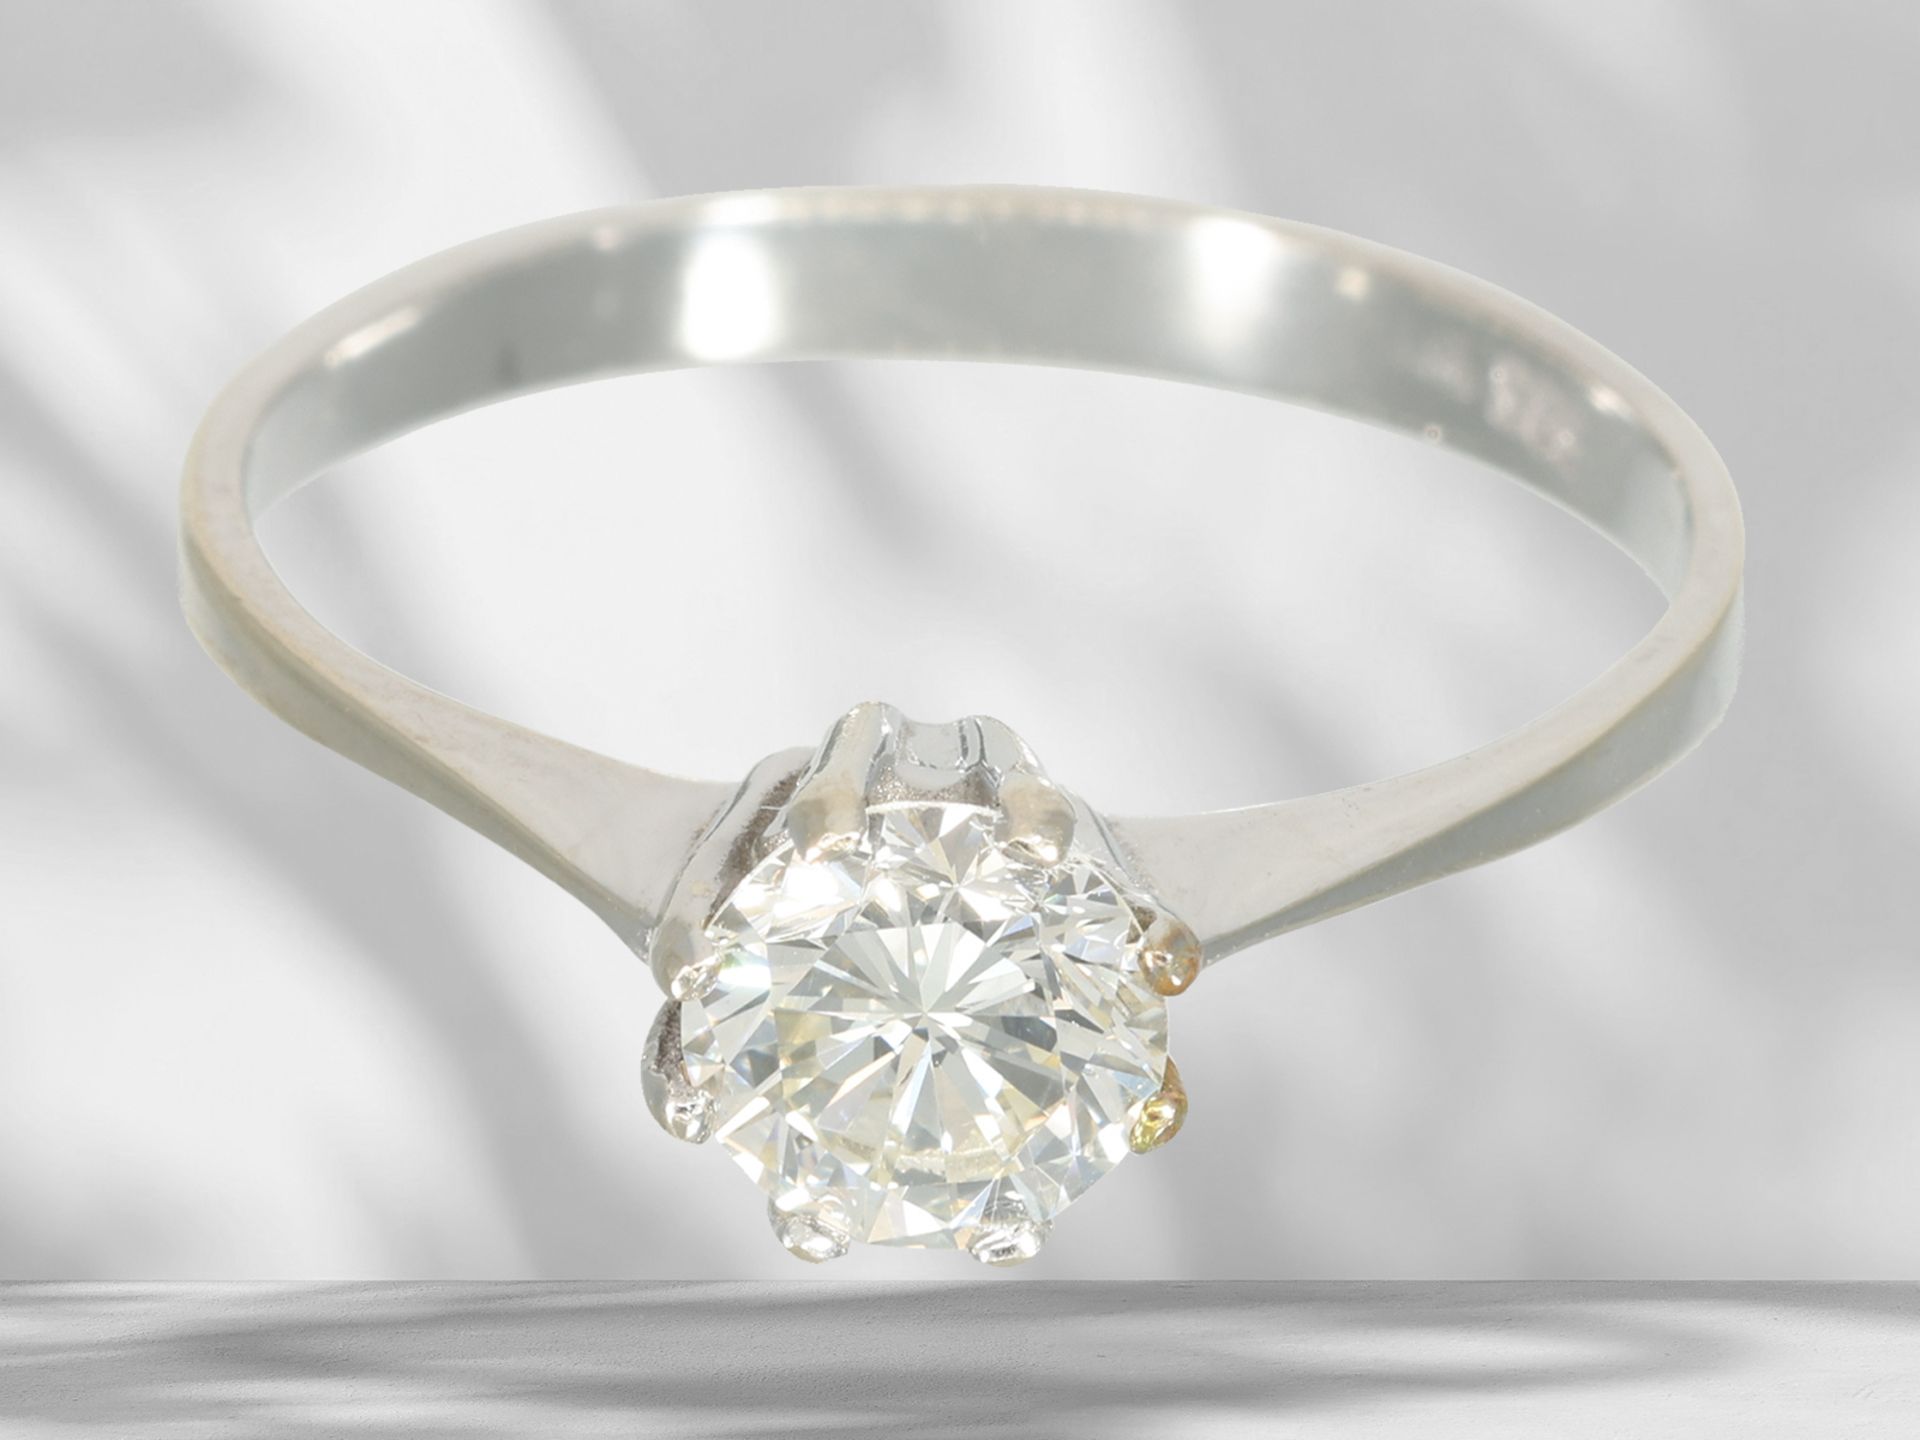 White gold solitaire/brilliant-cut diamond ring, beautiful brilliant-cut diamond of approx. 0.6ct - Image 2 of 4